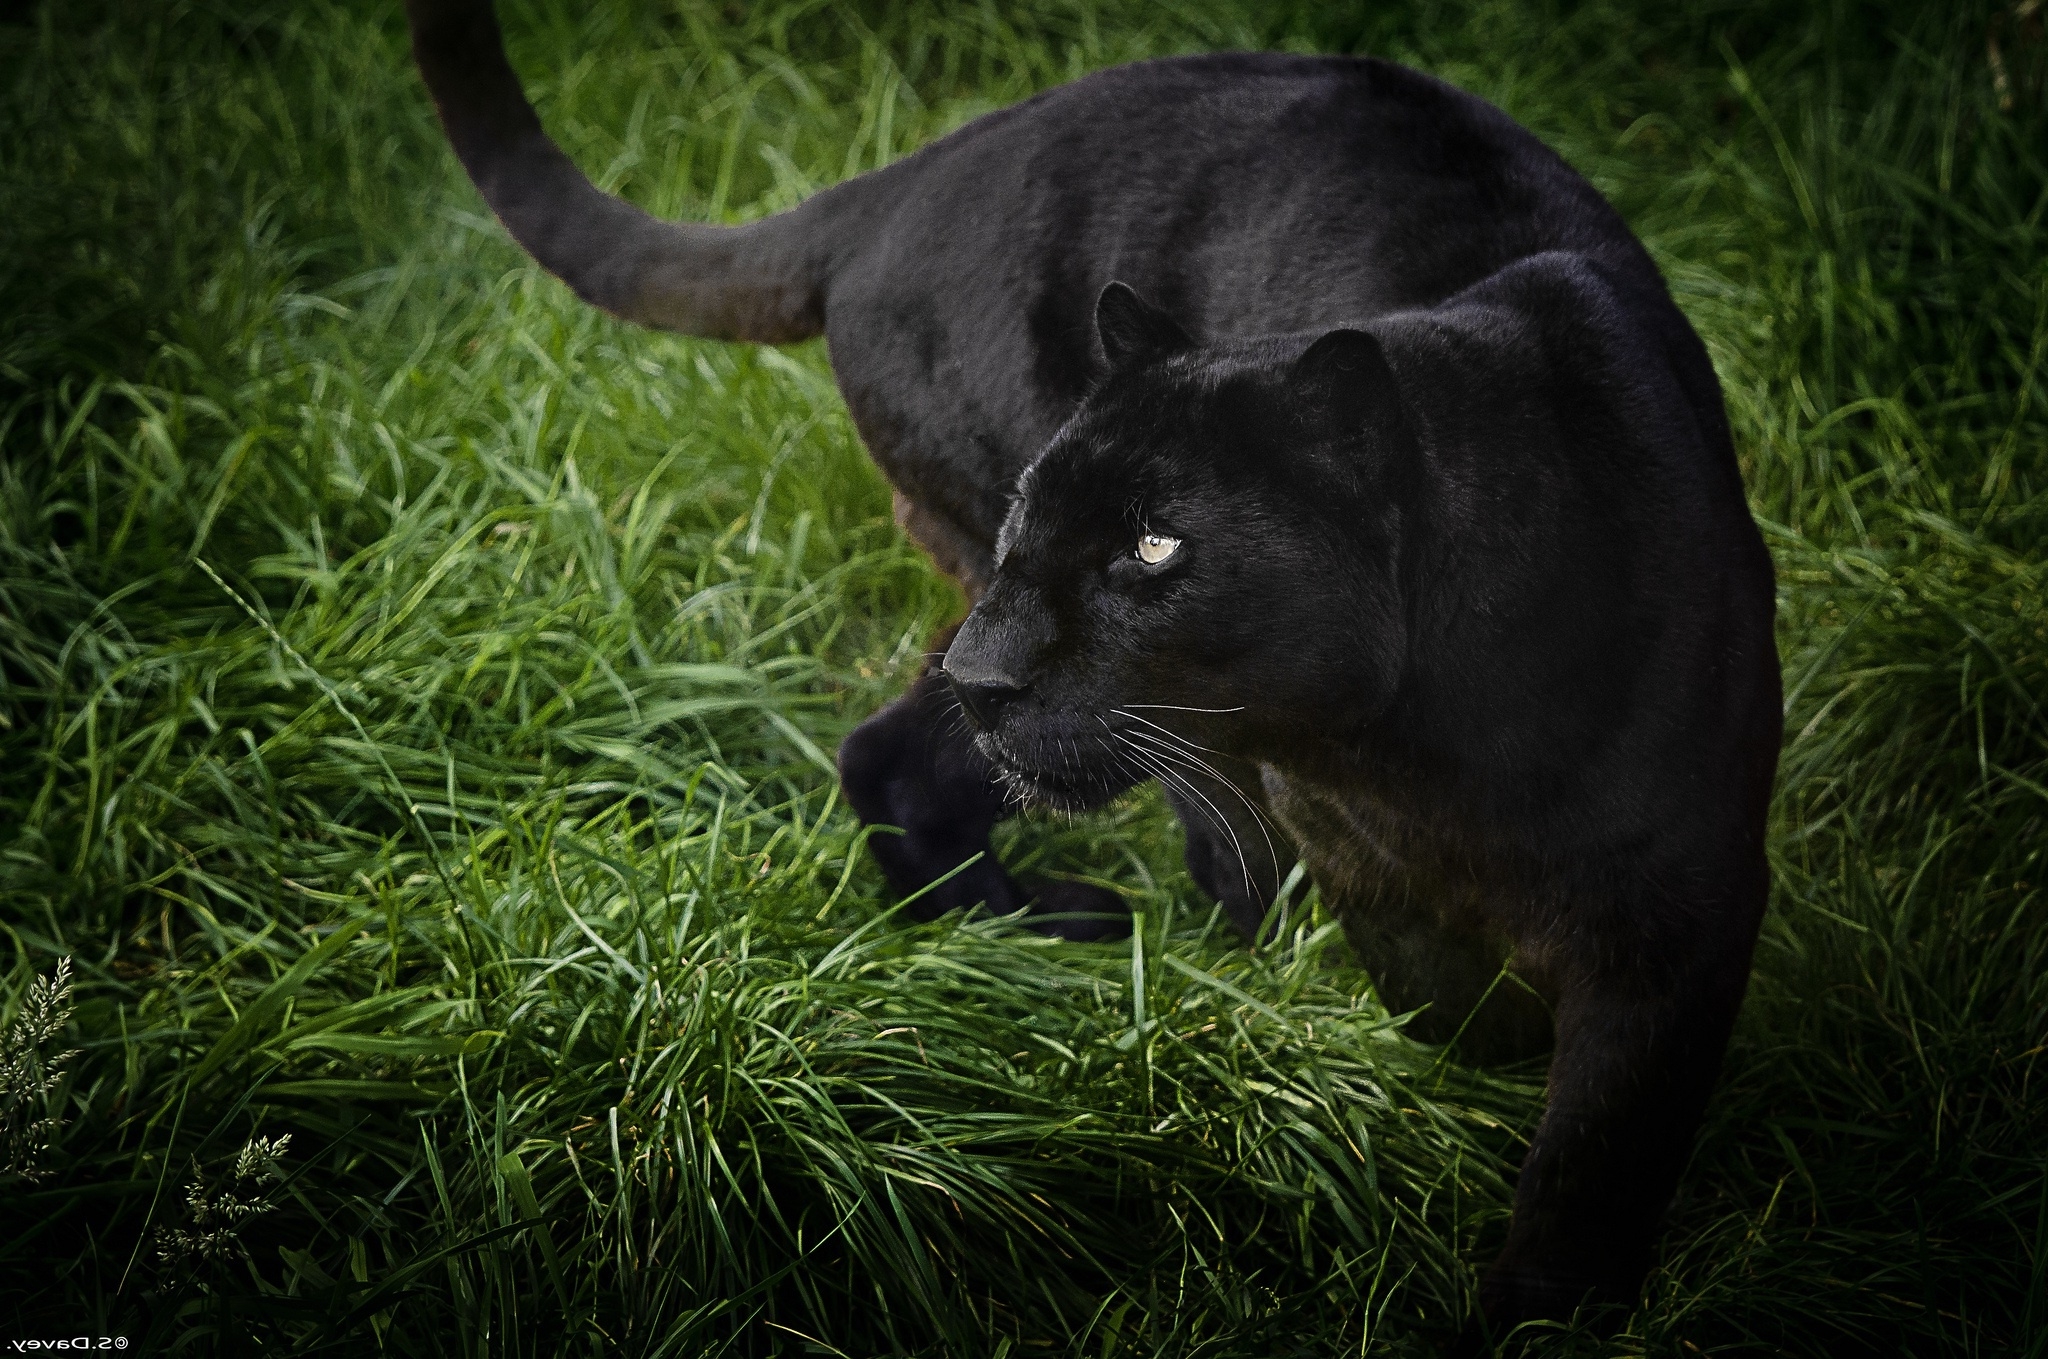 black panther animal hd wallpaper,terrestrial animal,green,grass,wildlife,felidae